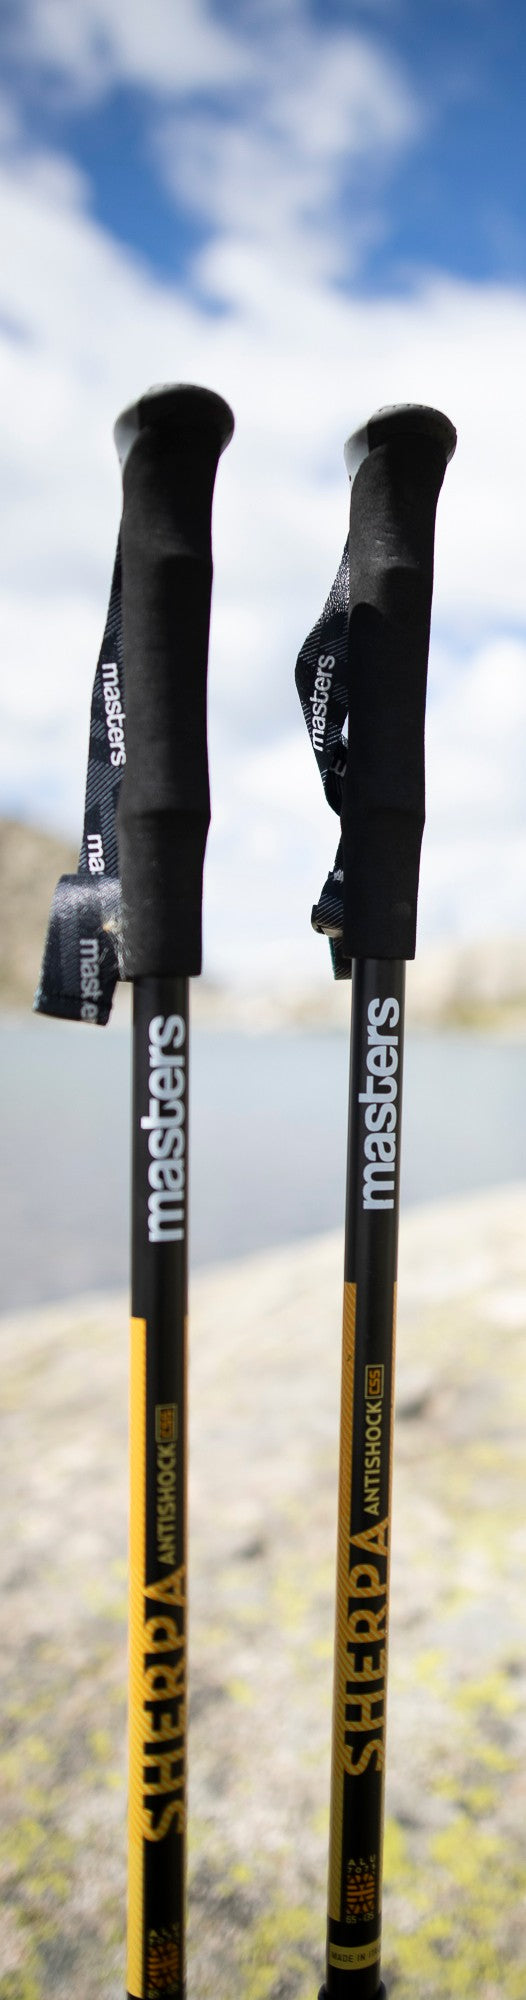 Masters Sherpa Antishock CSS Walking Poles - Pair